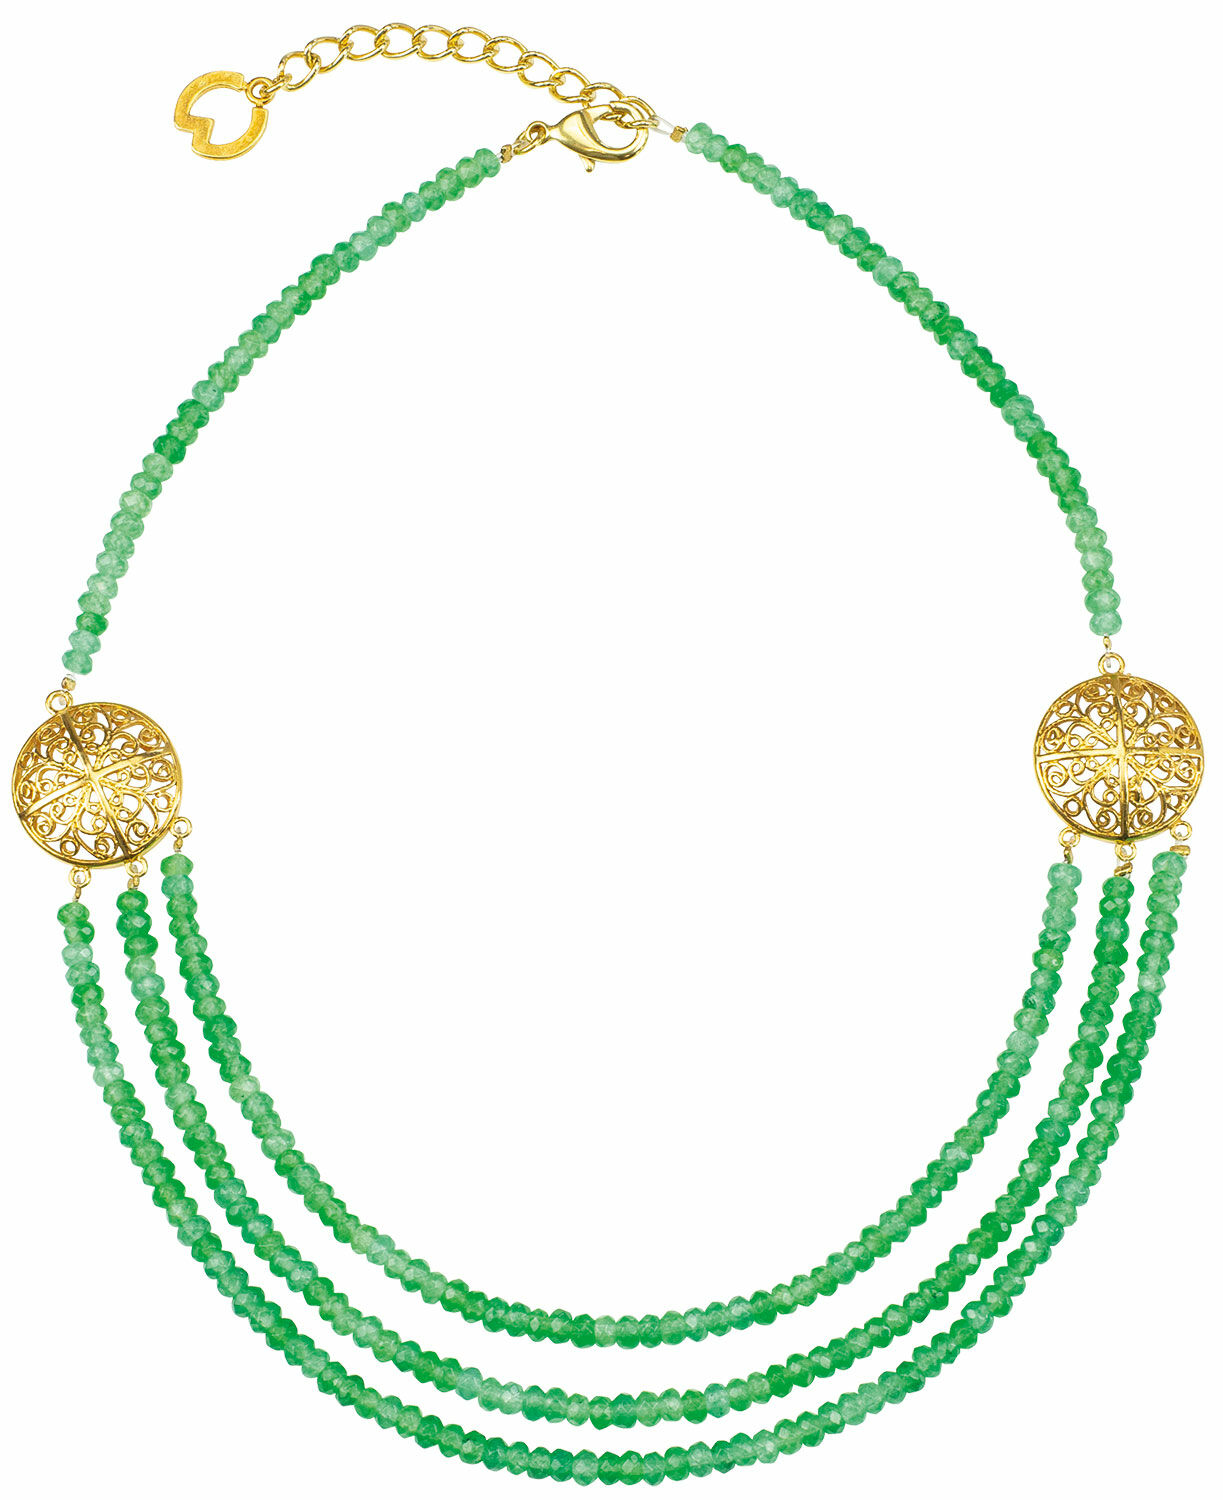 Necklace "Theodora" by Petra Waszak